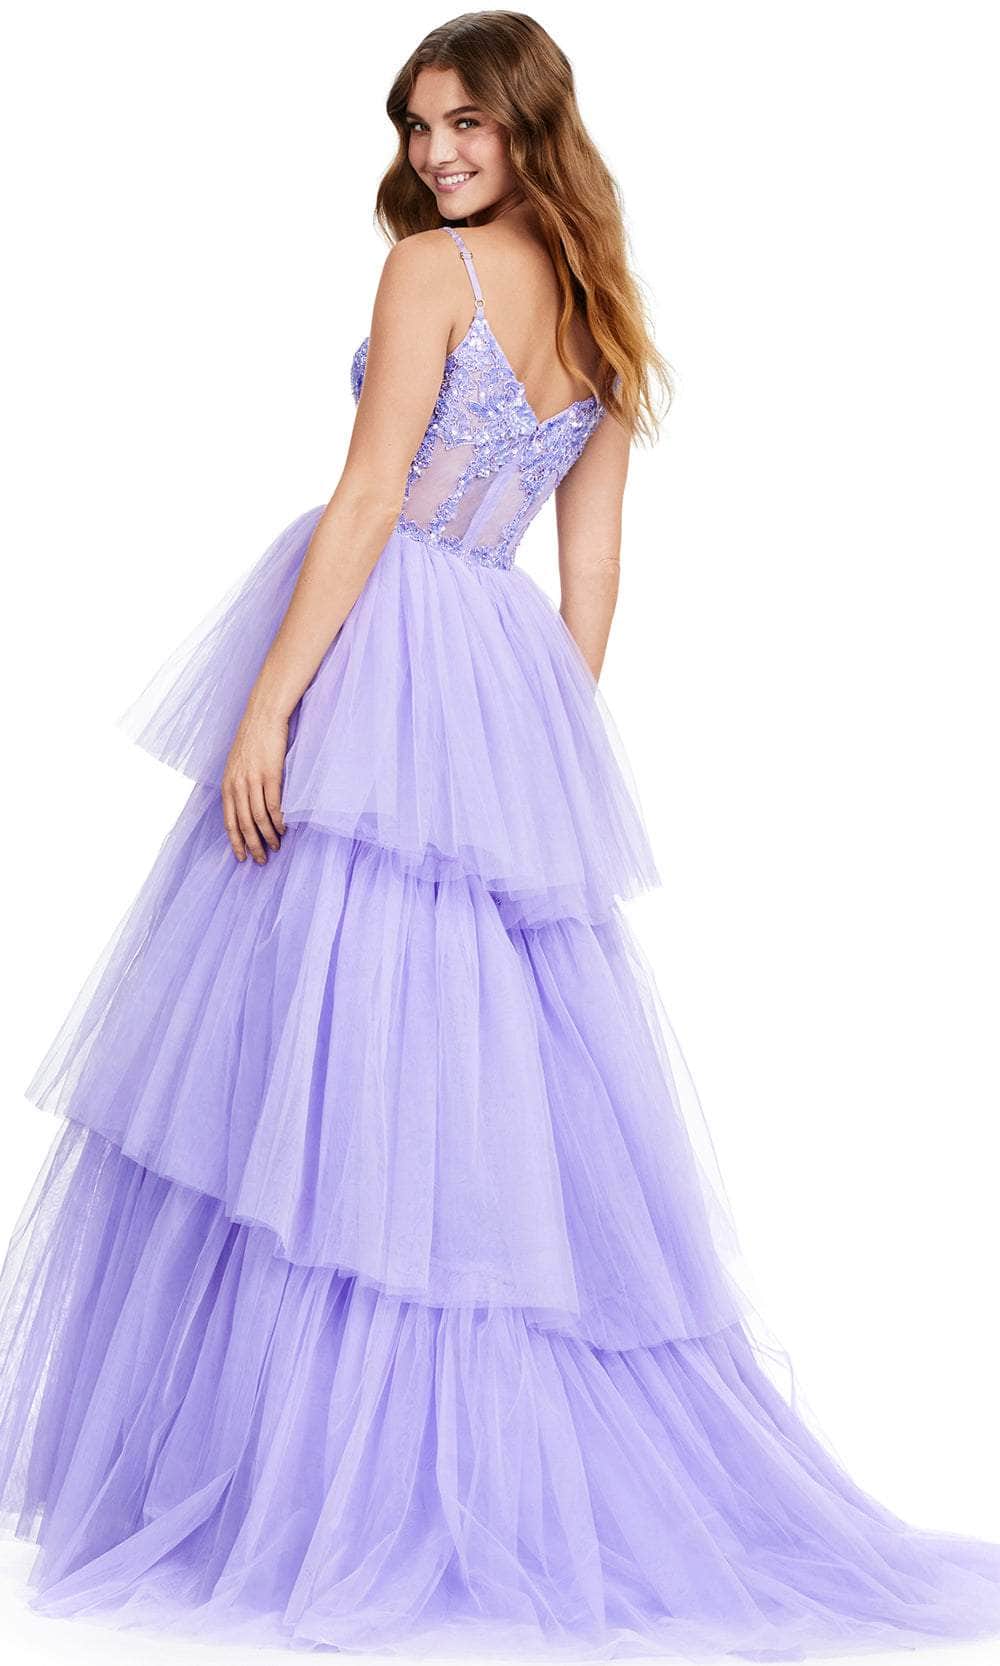 Ashley Lauren 11462 - Beaded Corset Tulle Prom Dress Prom Dresses